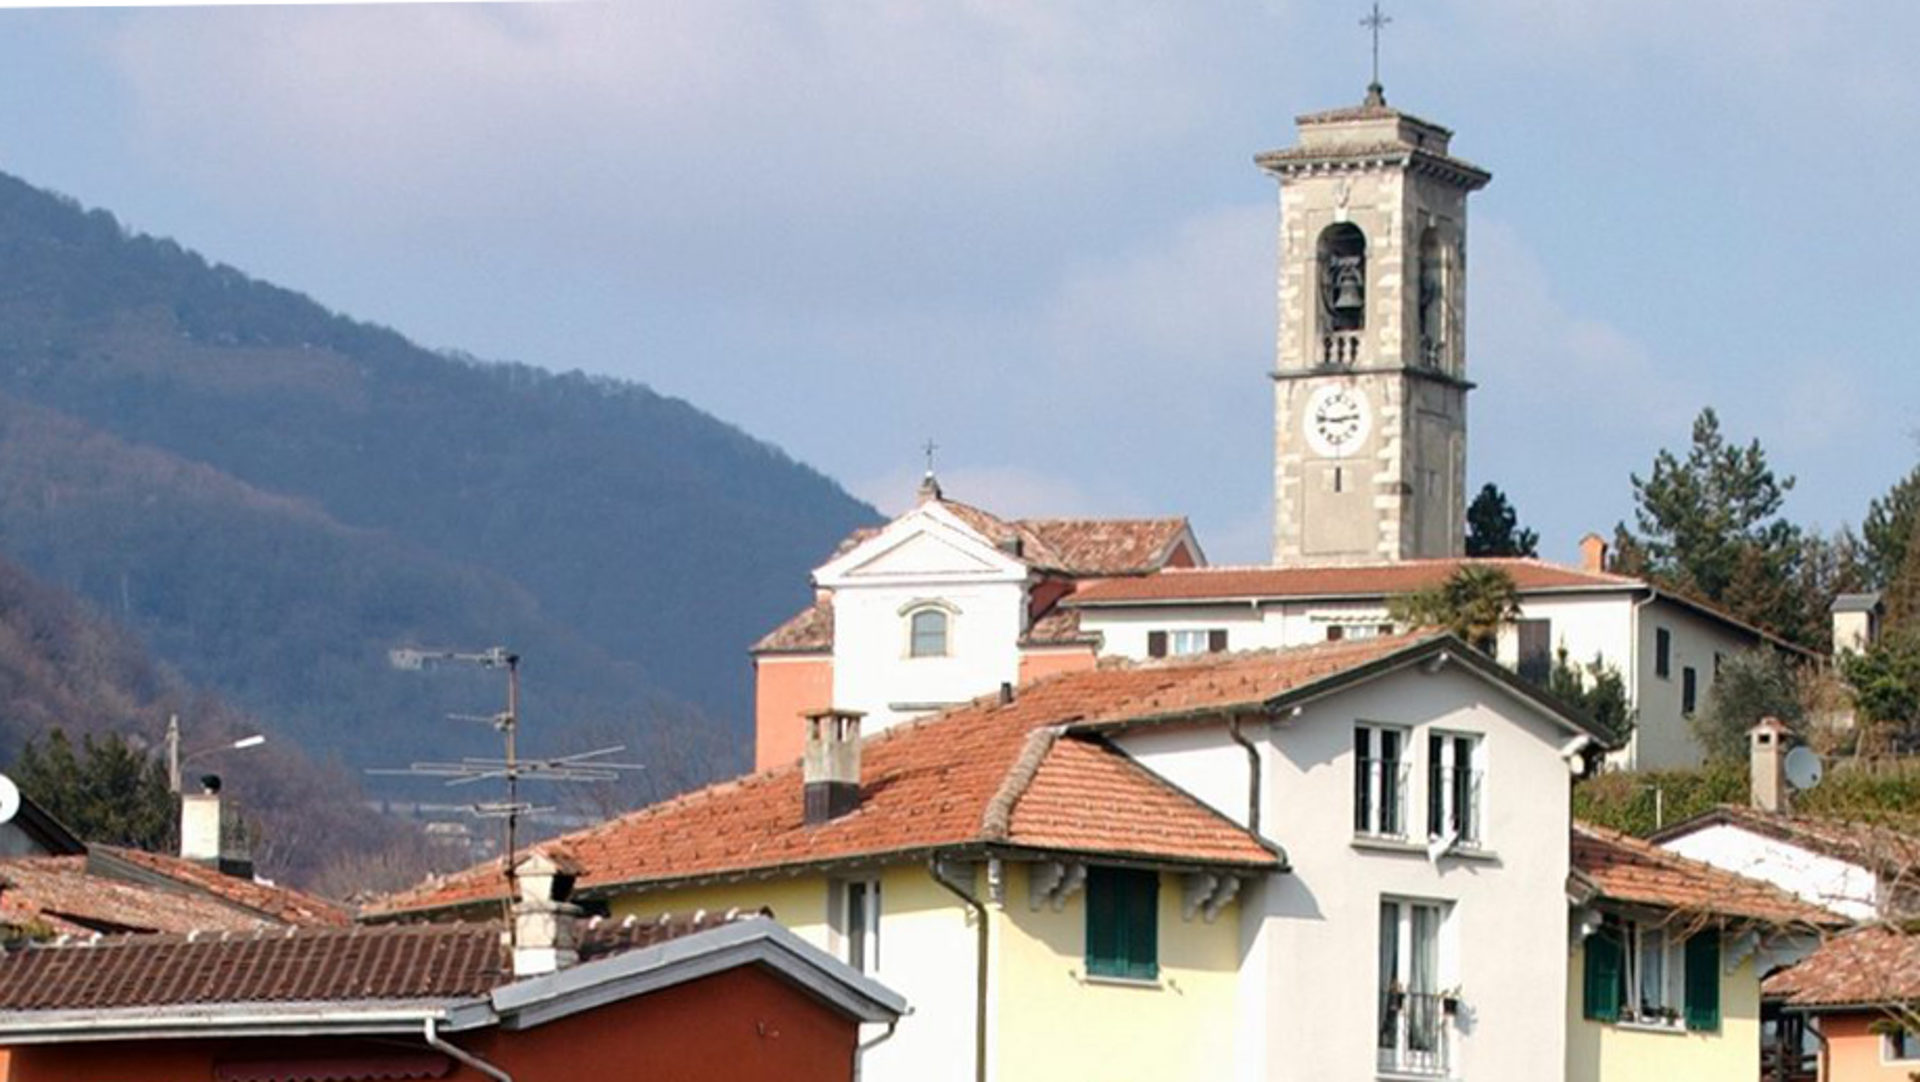 Morbio mit seiner Wallfahrtskirche